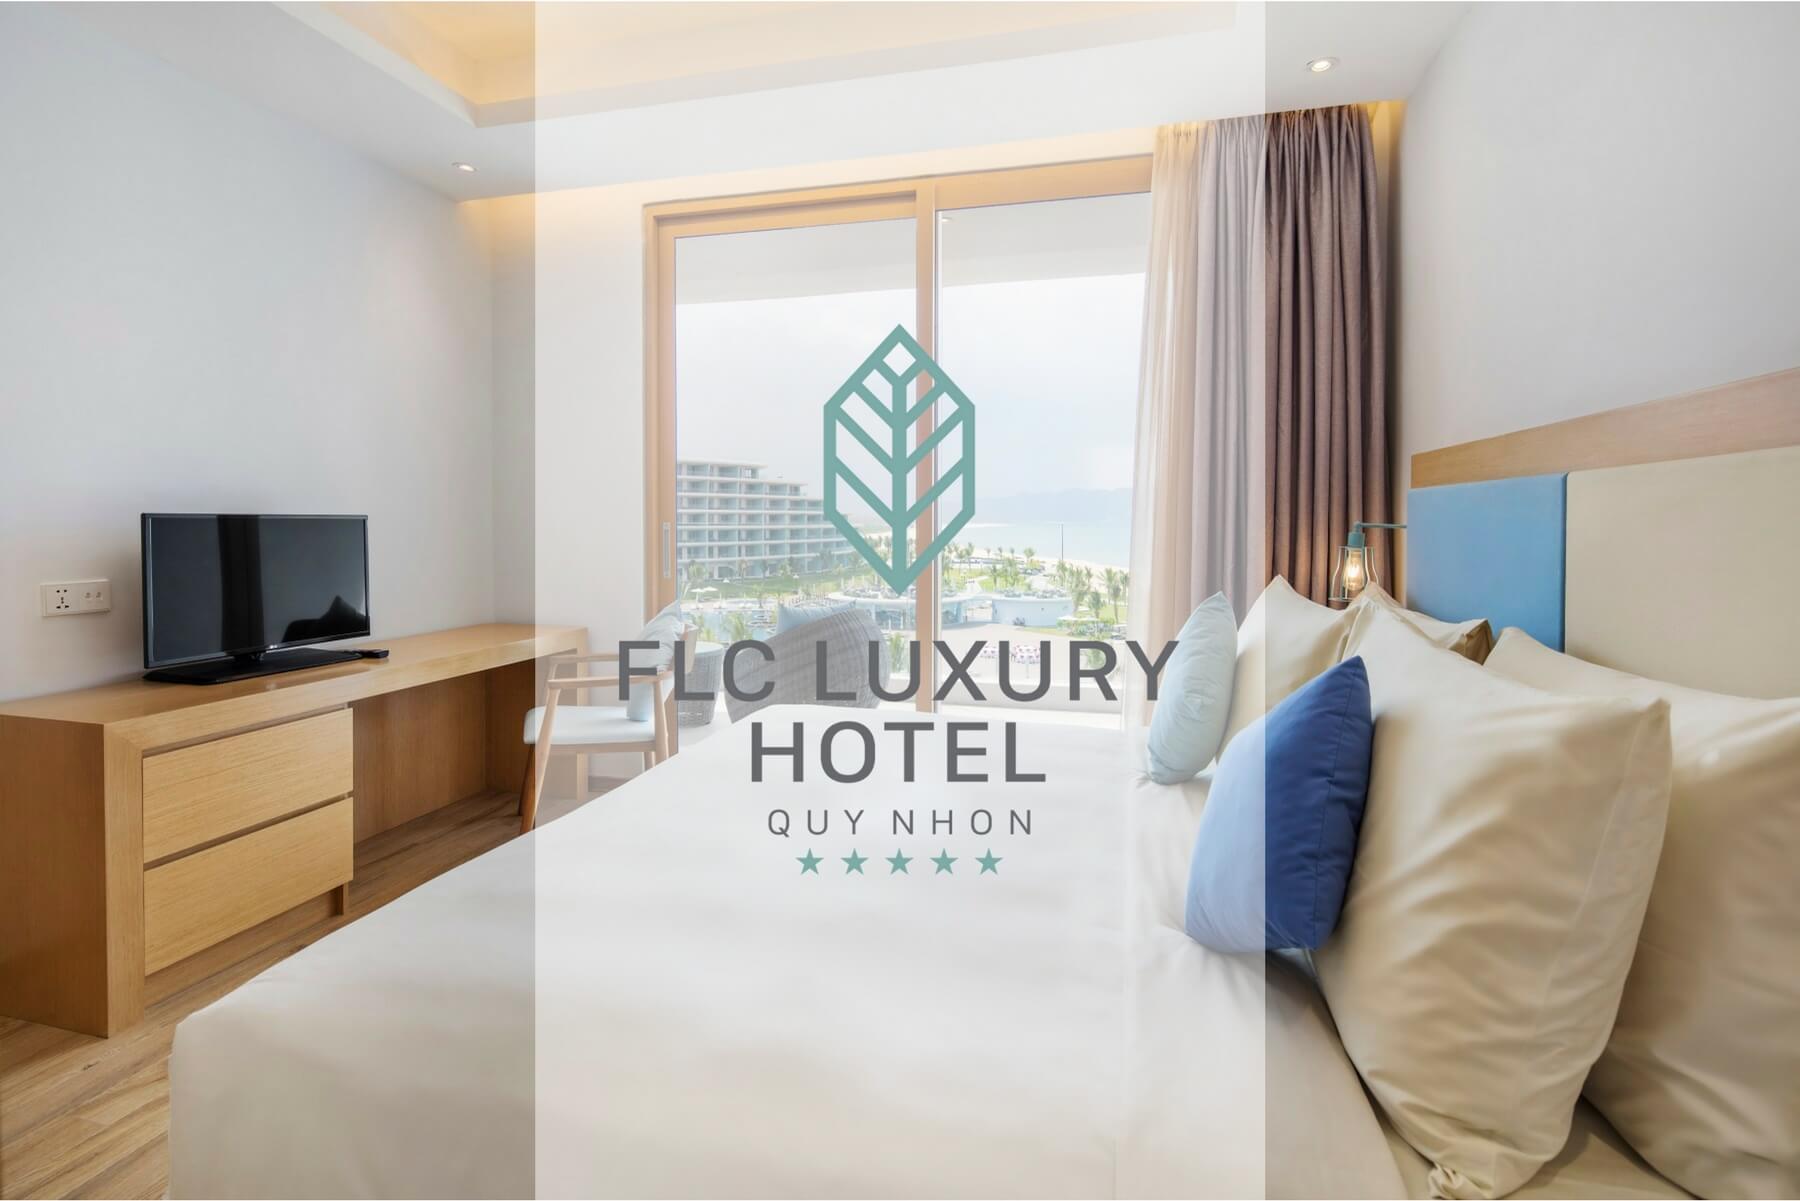 Khách sạn FLC Luxury Hotel - Nổi tiếng với kiến trúc độc đáo nhất